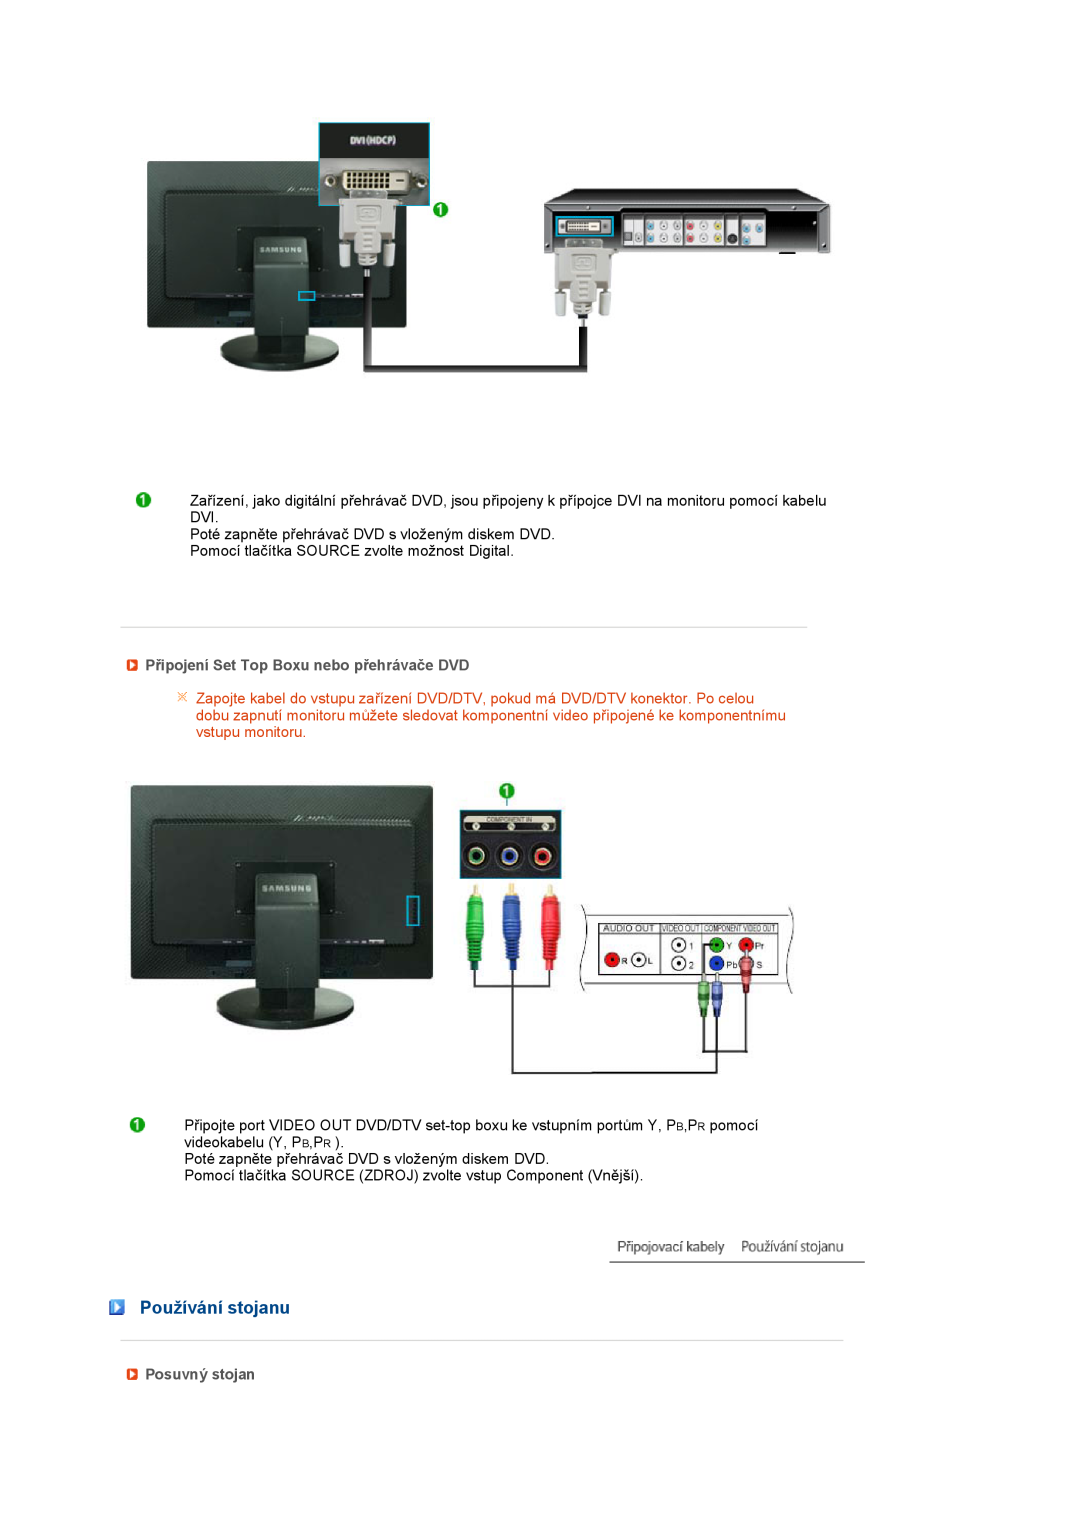 Samsung LS27HUBCB/EDC, LS27HUBCBS/EDC manual Používání stojanu, Připojení Set Top Boxu nebo přehrávače DVD, Posuvný stojan 